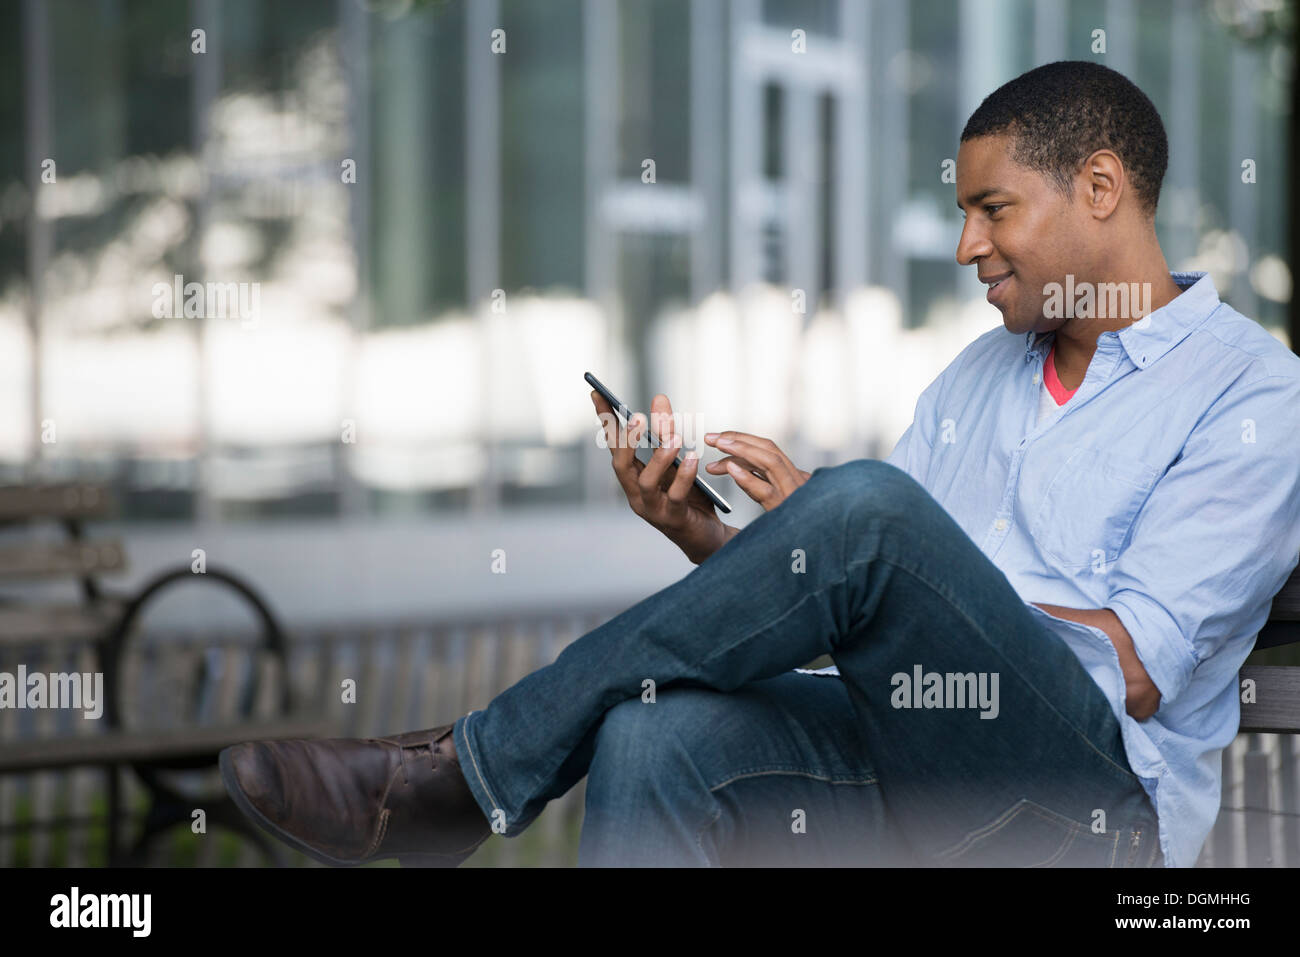 Sommer in der Stadt. Menschen im Freien, reibungslose Kommunikation unterwegs. Ein Mann sitzt auf einer Bank mit einem digitalen Tablet. Stockfoto